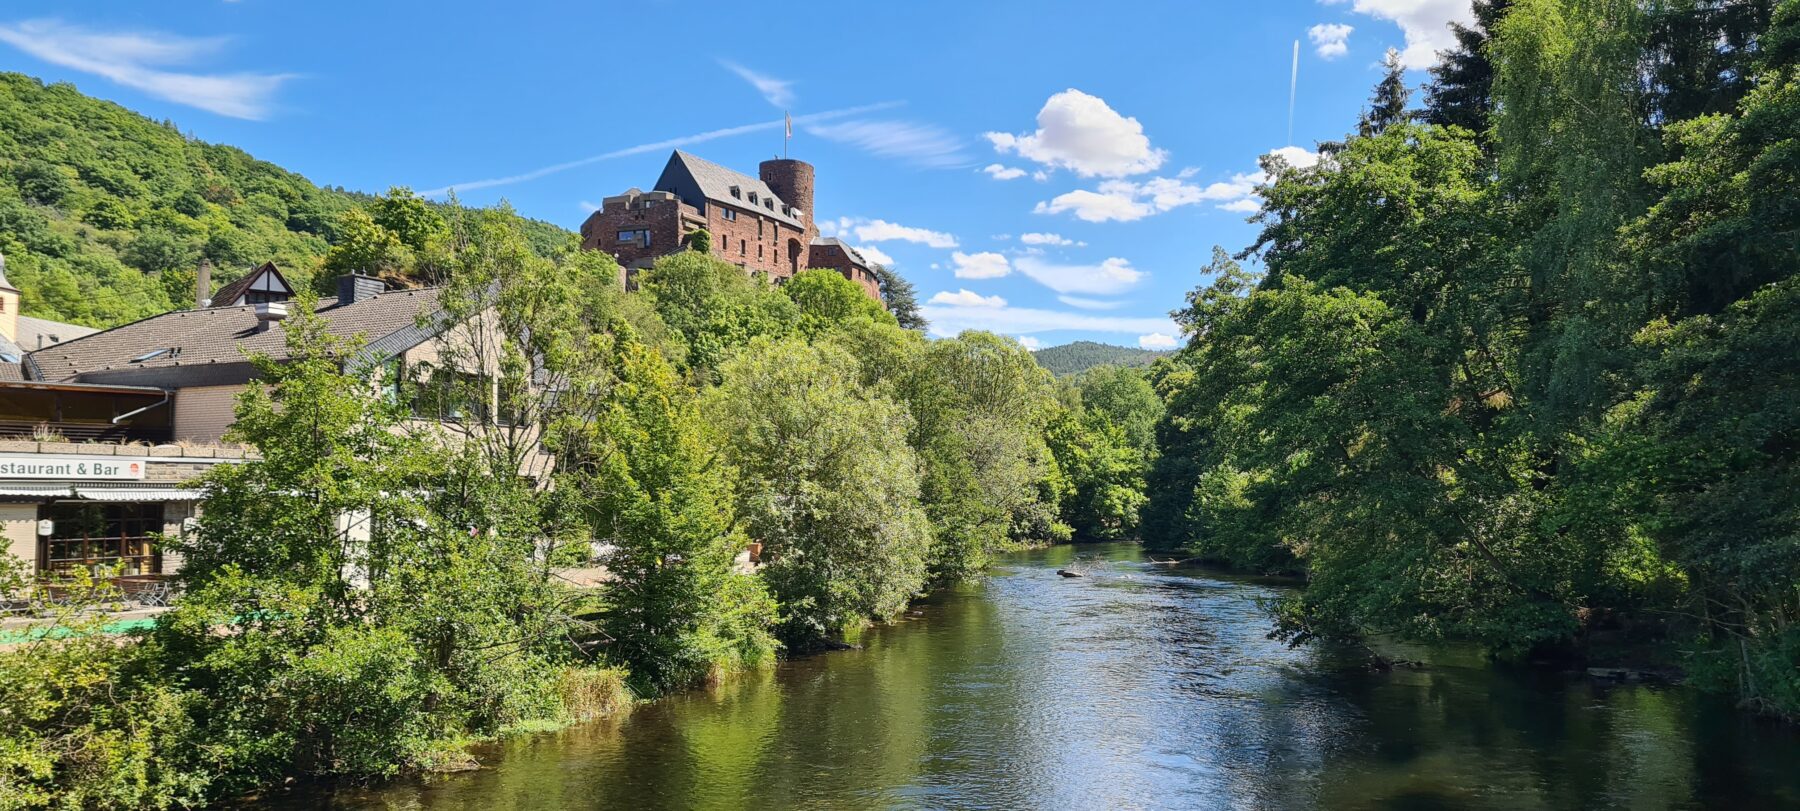 Een kasteel en rivier in de Eifel